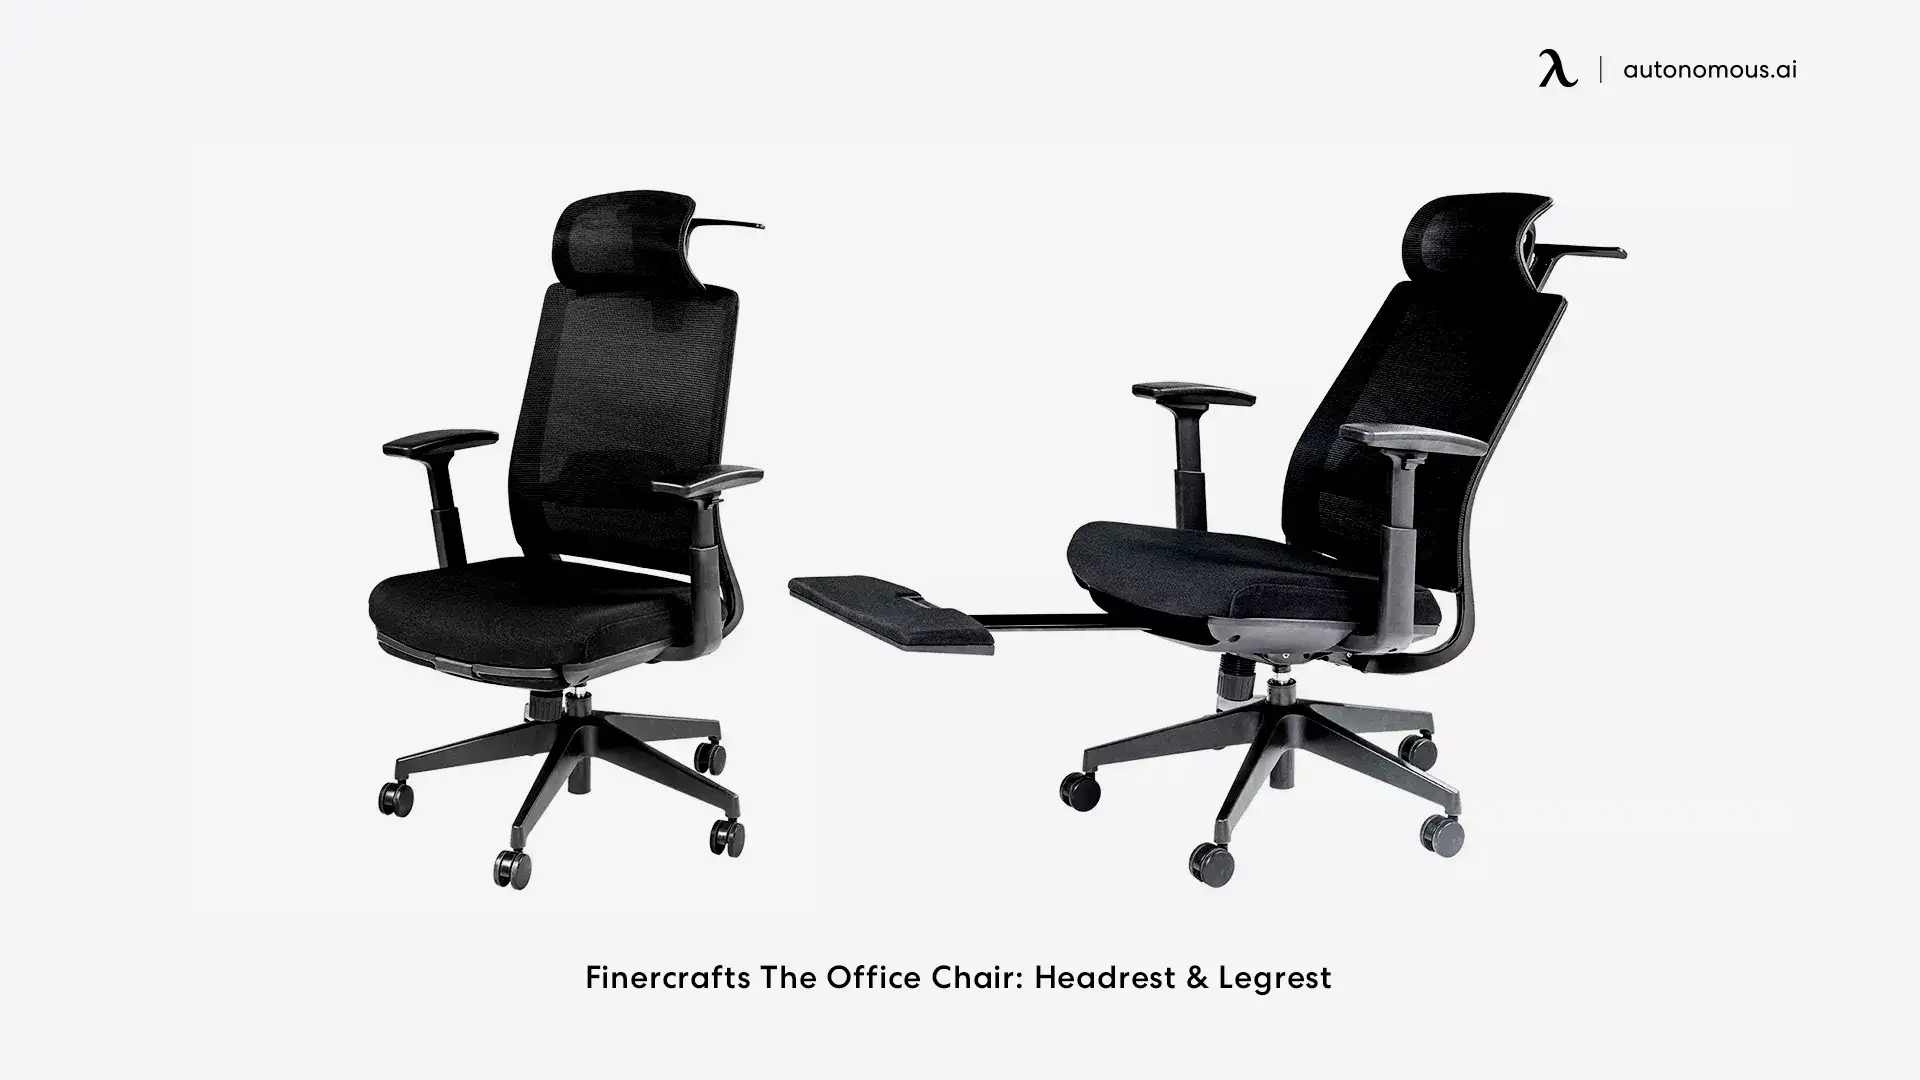 Finercrafts The Office Chair: Headrest & Legrest